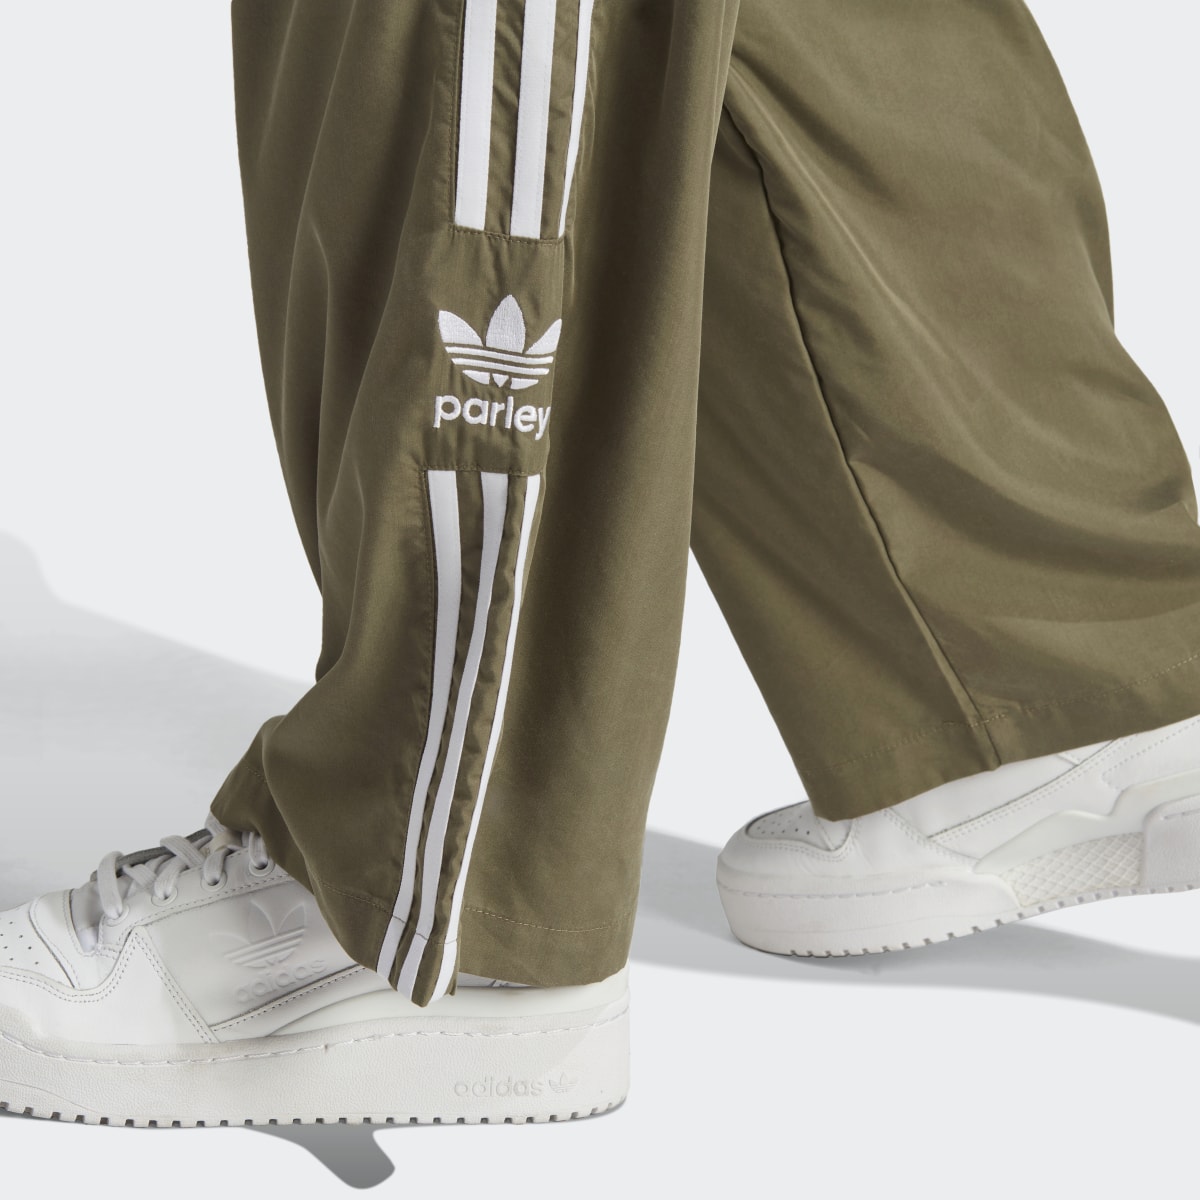 Adidas Parley Pants. 6